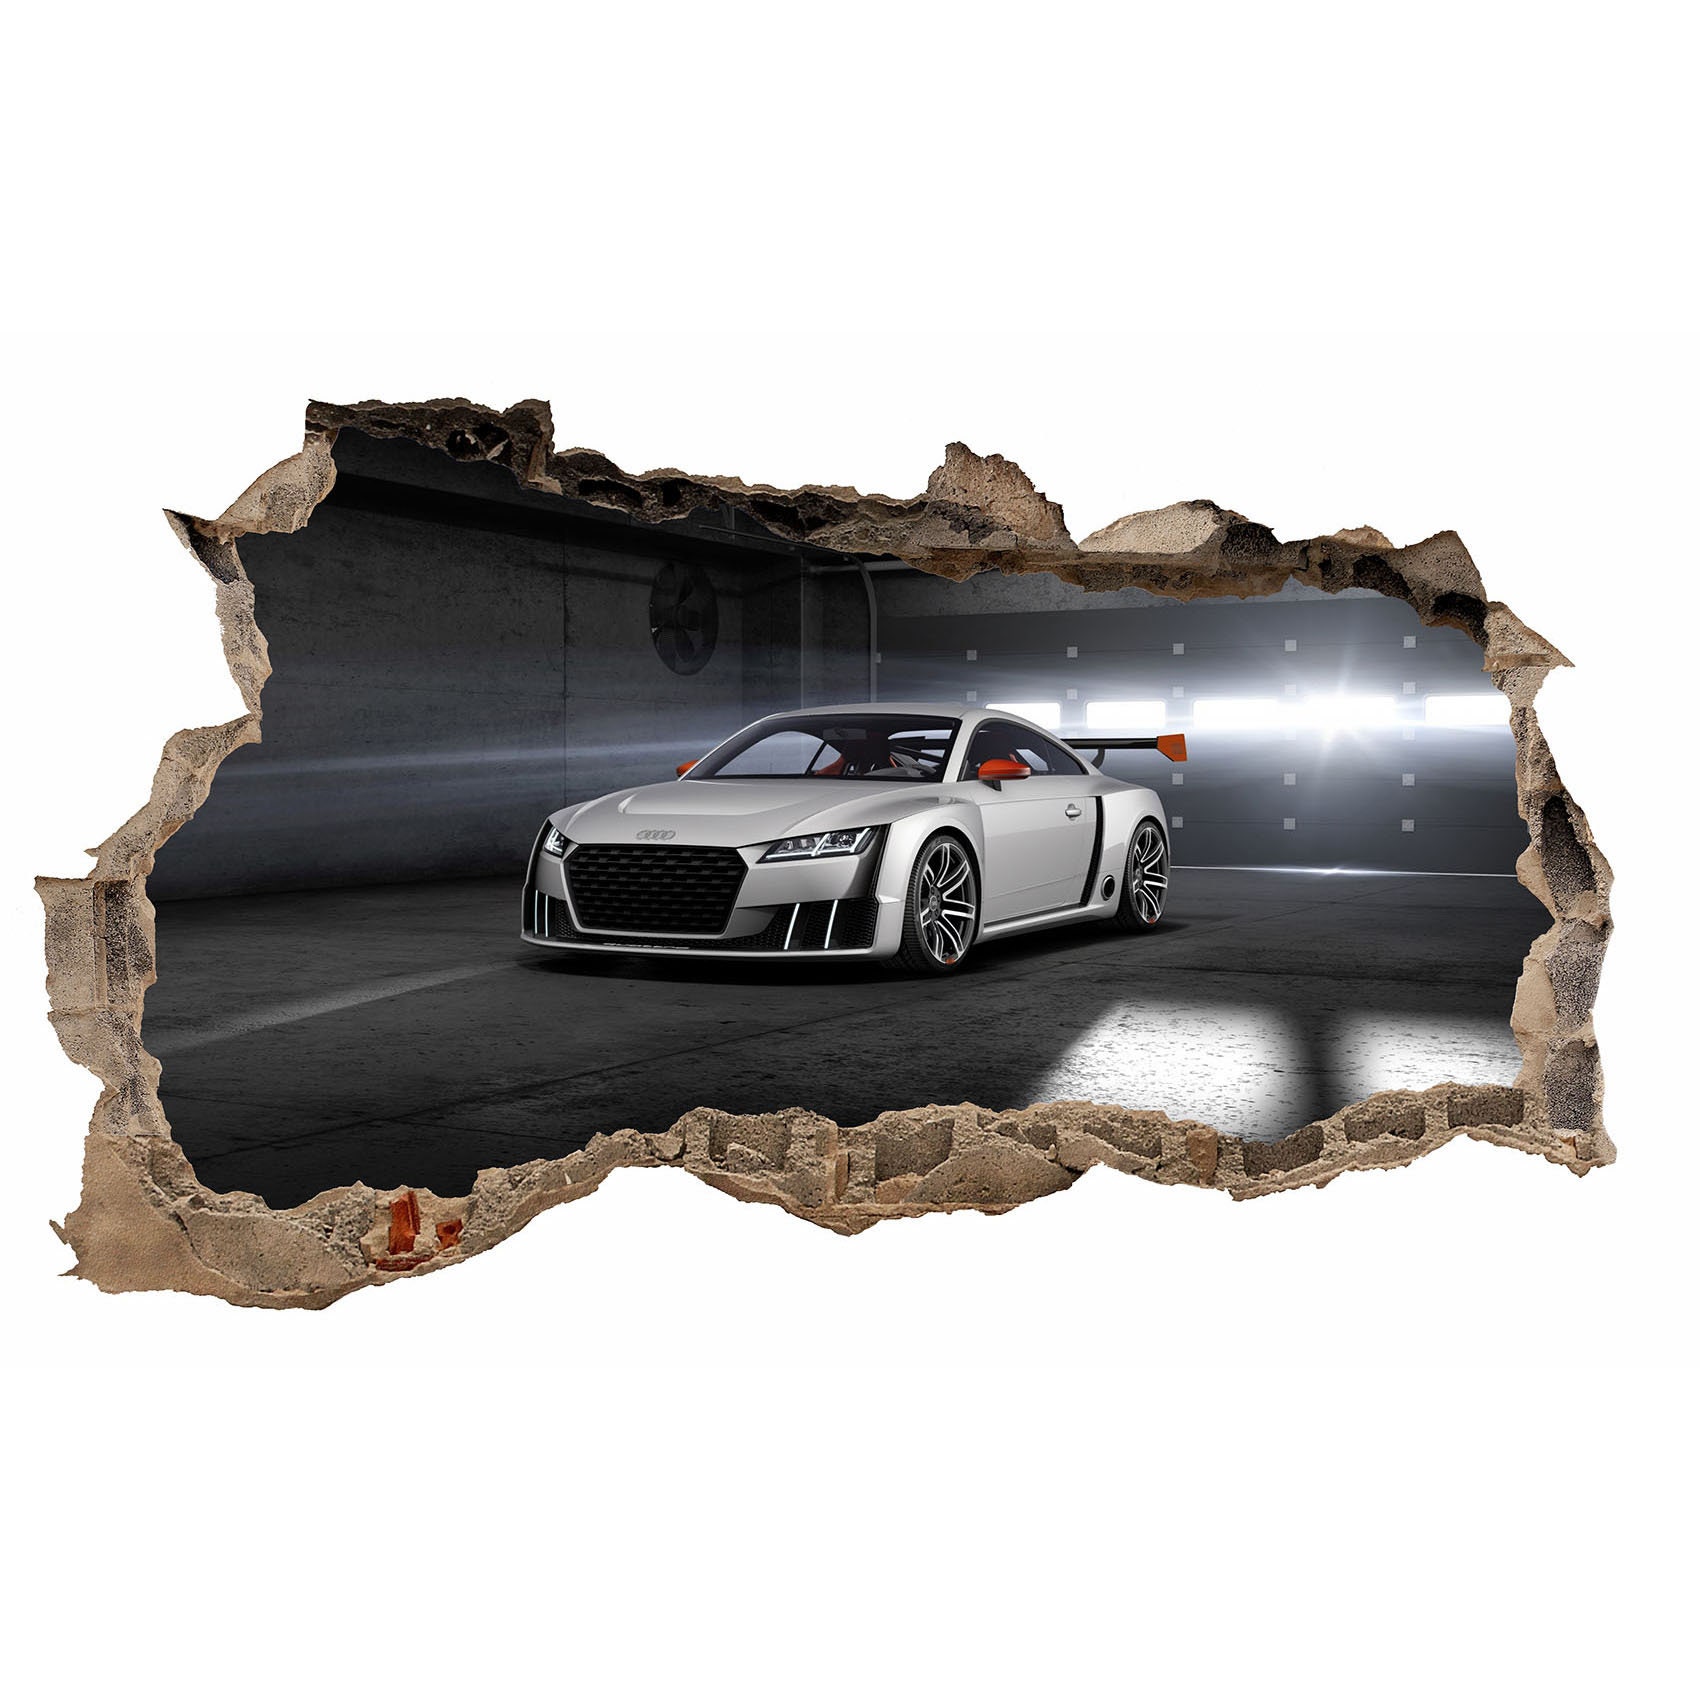 Audi Ringe aus Holz beleuchtet als Wand-Deko - Sonstiges - A3-Freunde